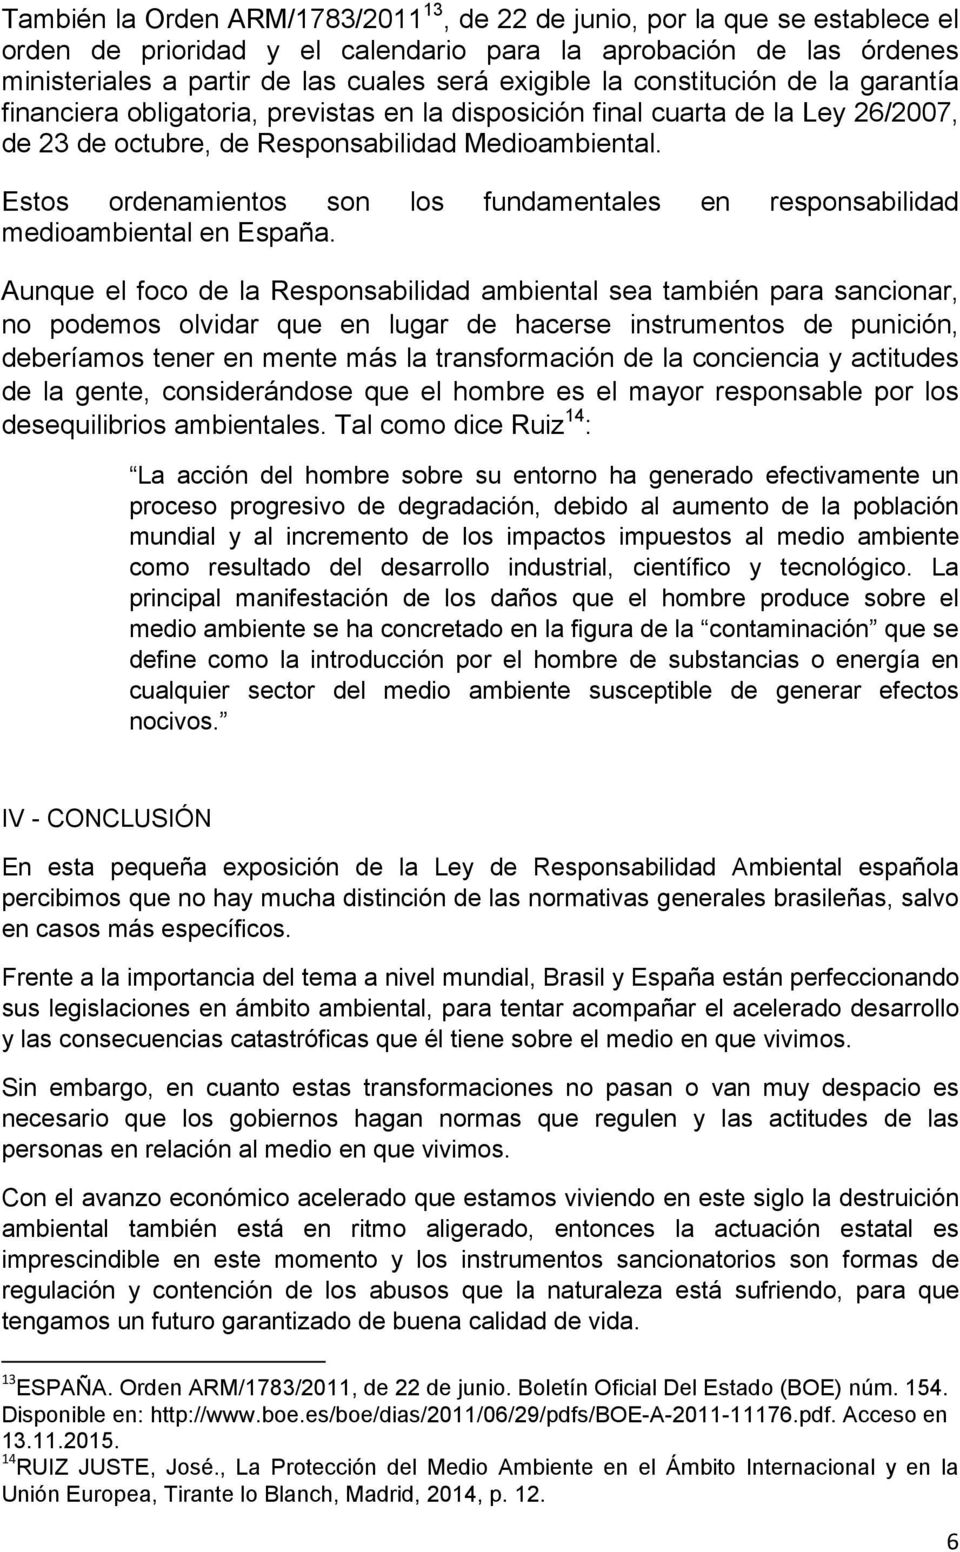 Estos ordenamientos son los fundamentales en responsabilidad medioambiental en España.